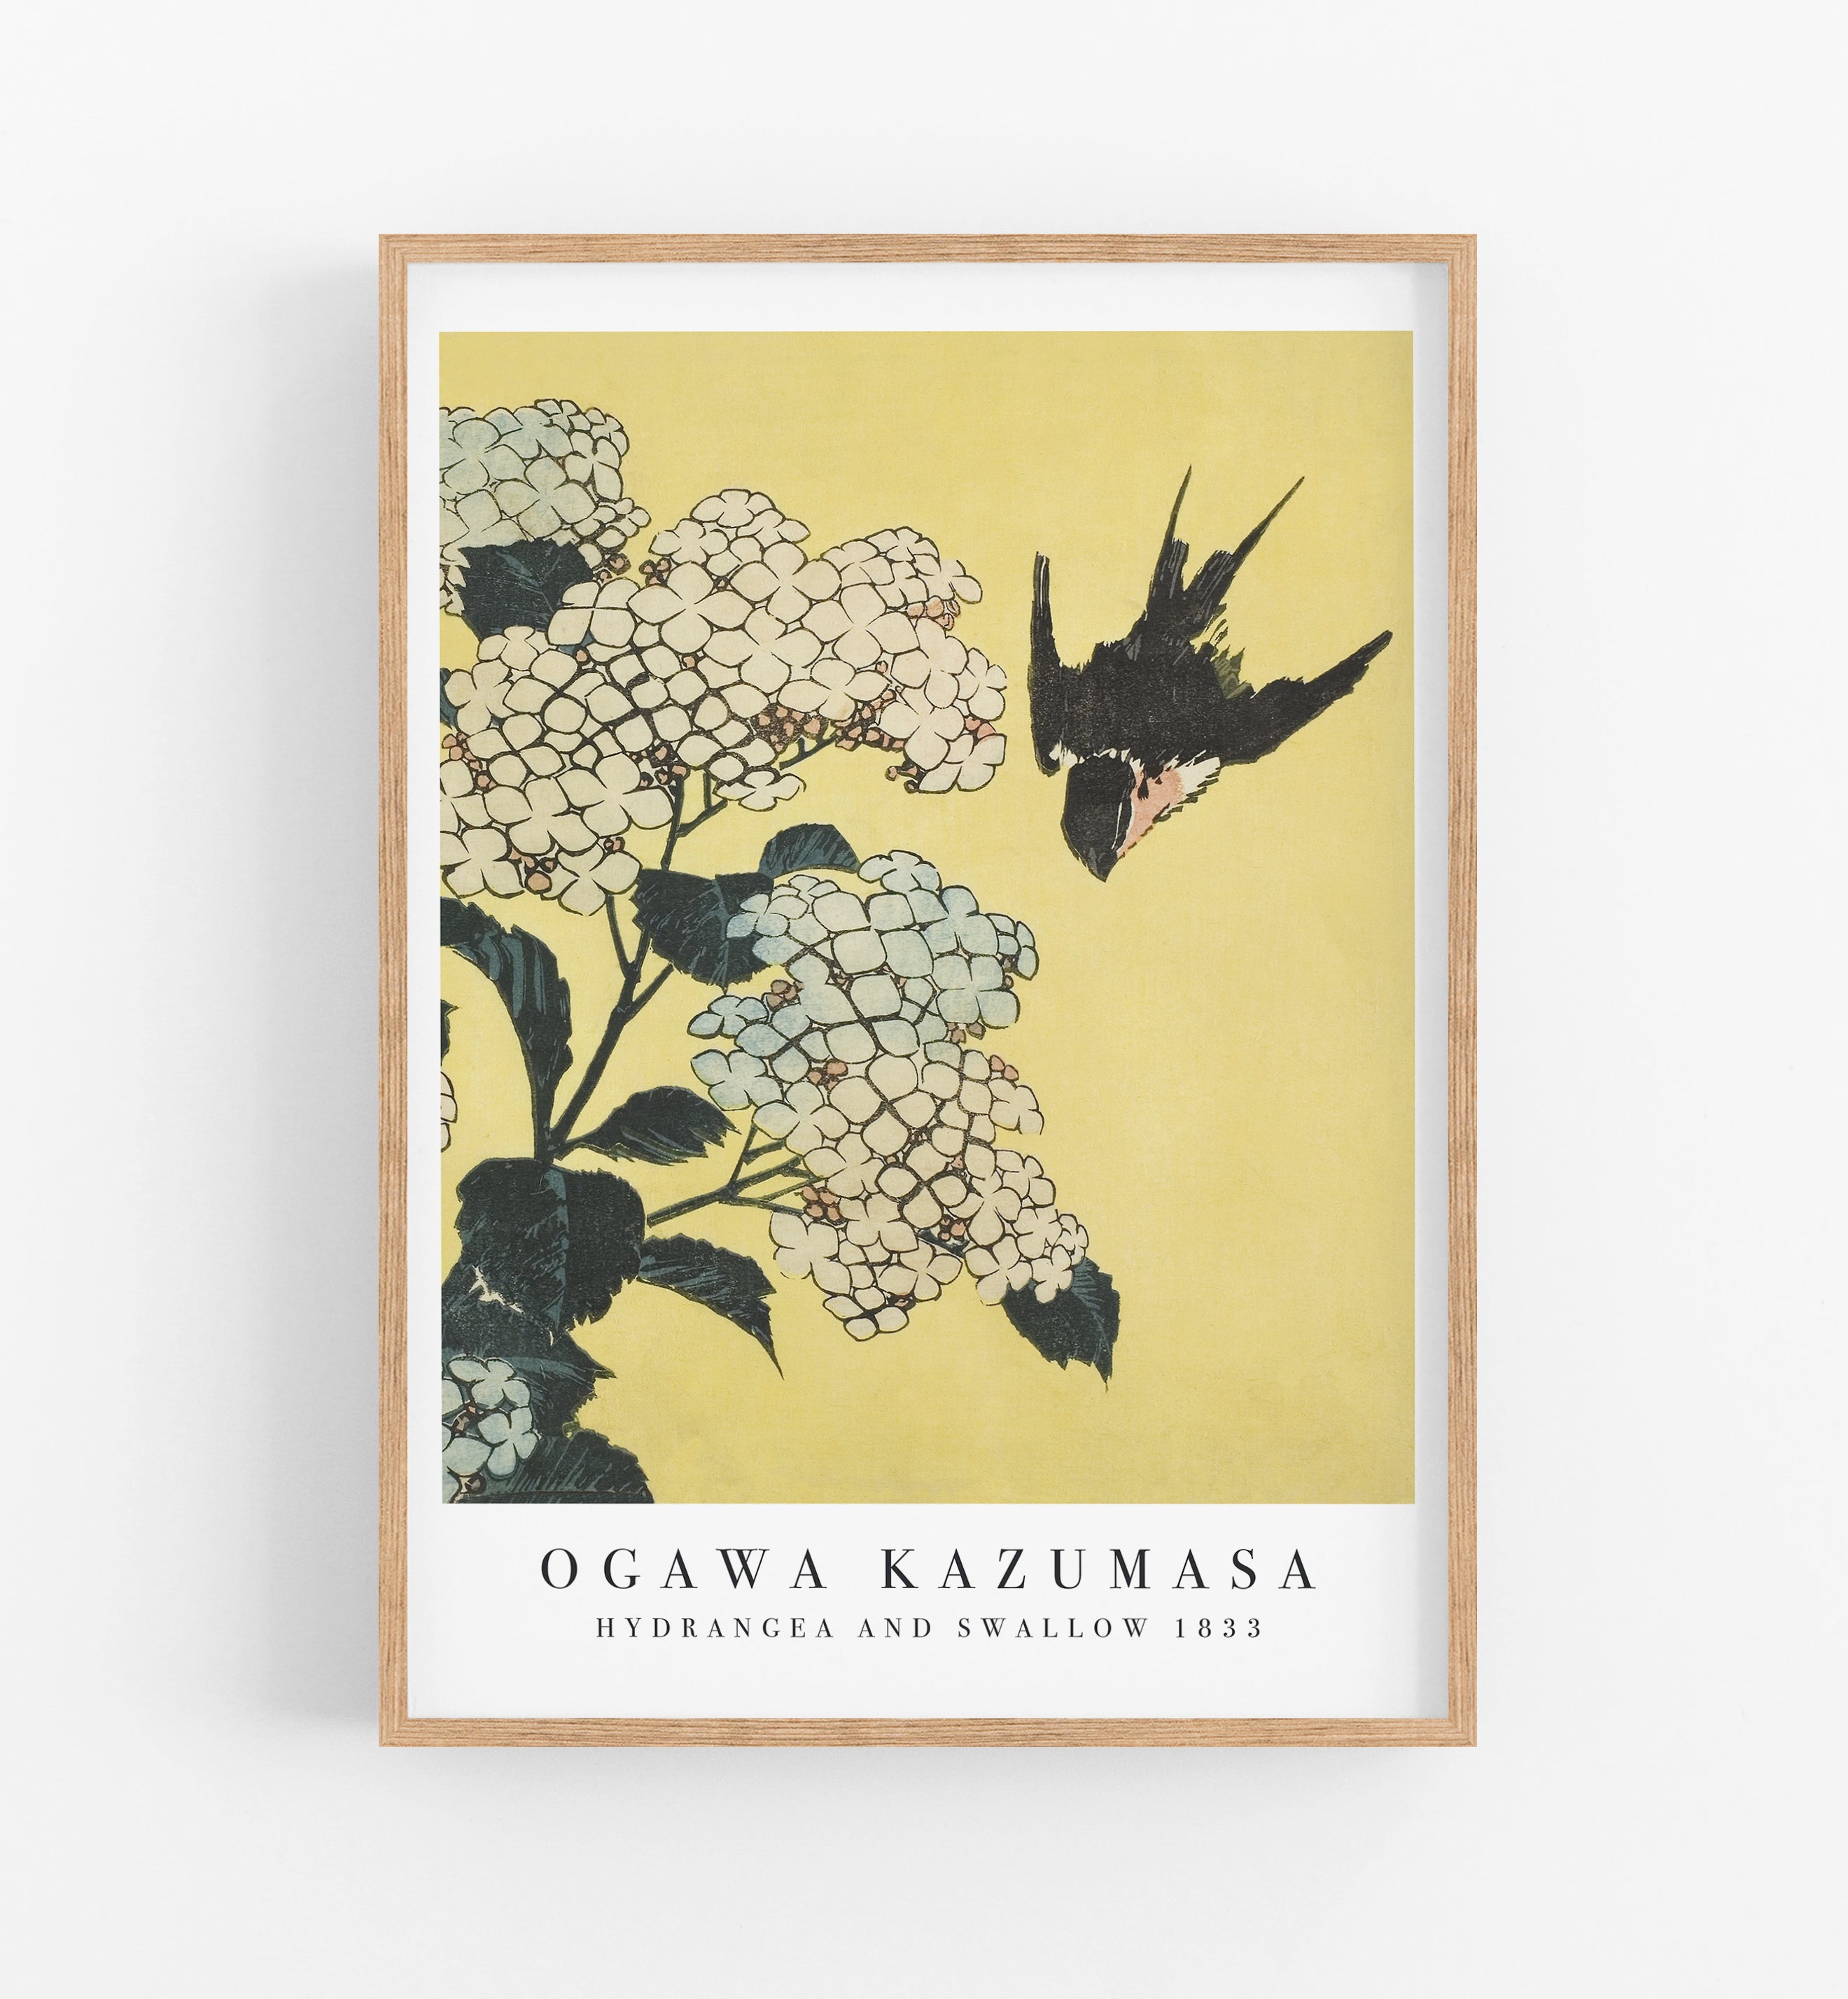 Kazumasa Hydrangea and Swallow